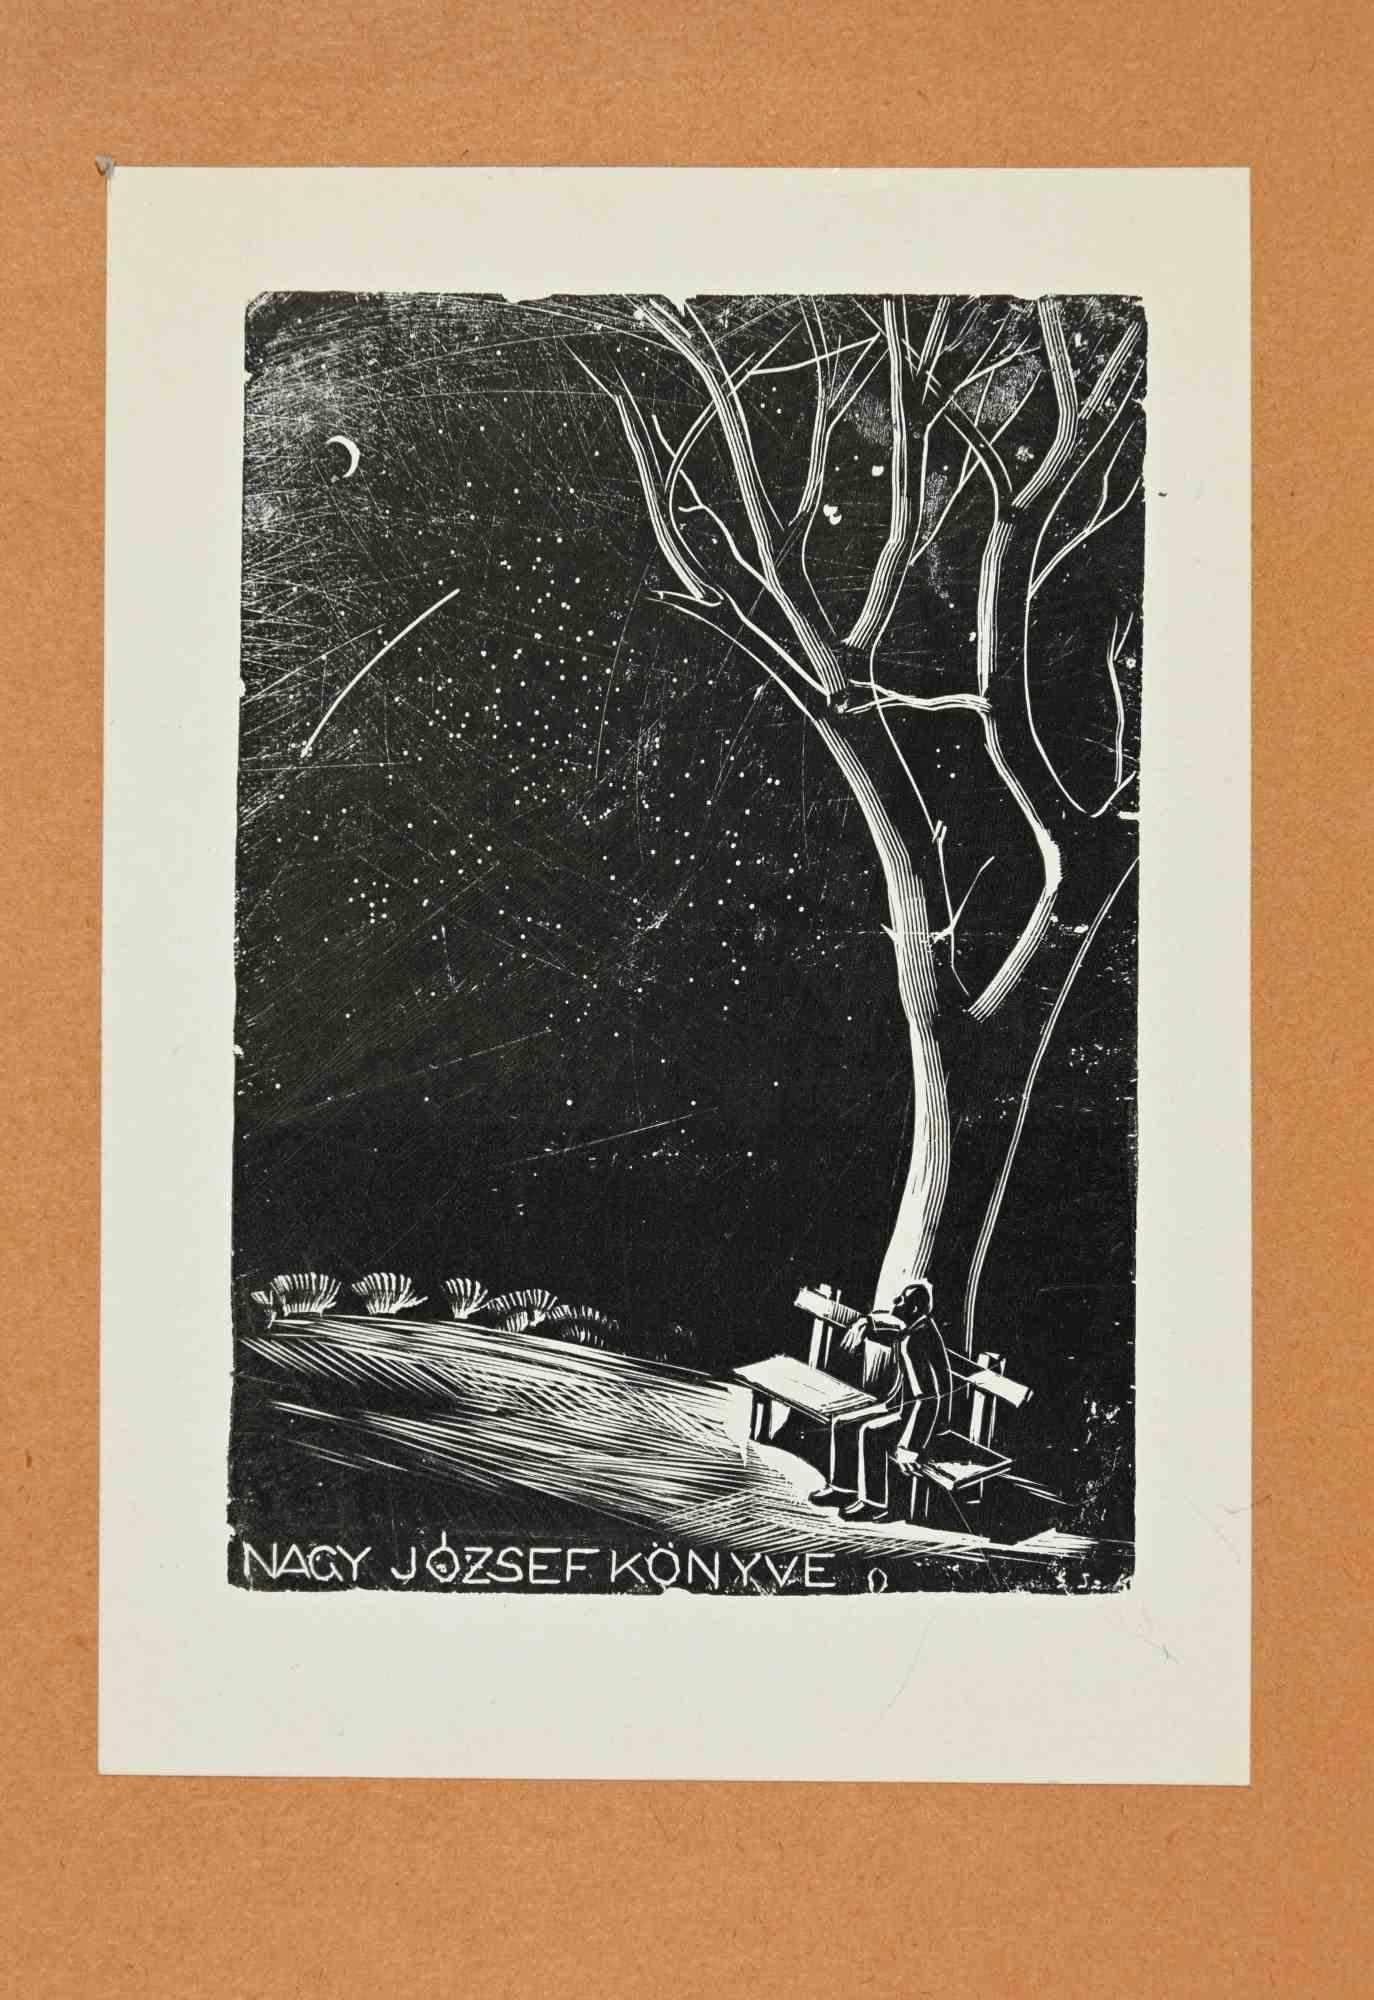 Ex libris - Nagy József Könyve ist ein in den 1930er Jahren entstandenes Kunstwerk des ungarischen Künstlers Kálmán Gáborjáni Szabó (1897-1955). 

Holzschnitt B./W. Druck auf Papier. Das Werk ist auf orangefarbenen Karton